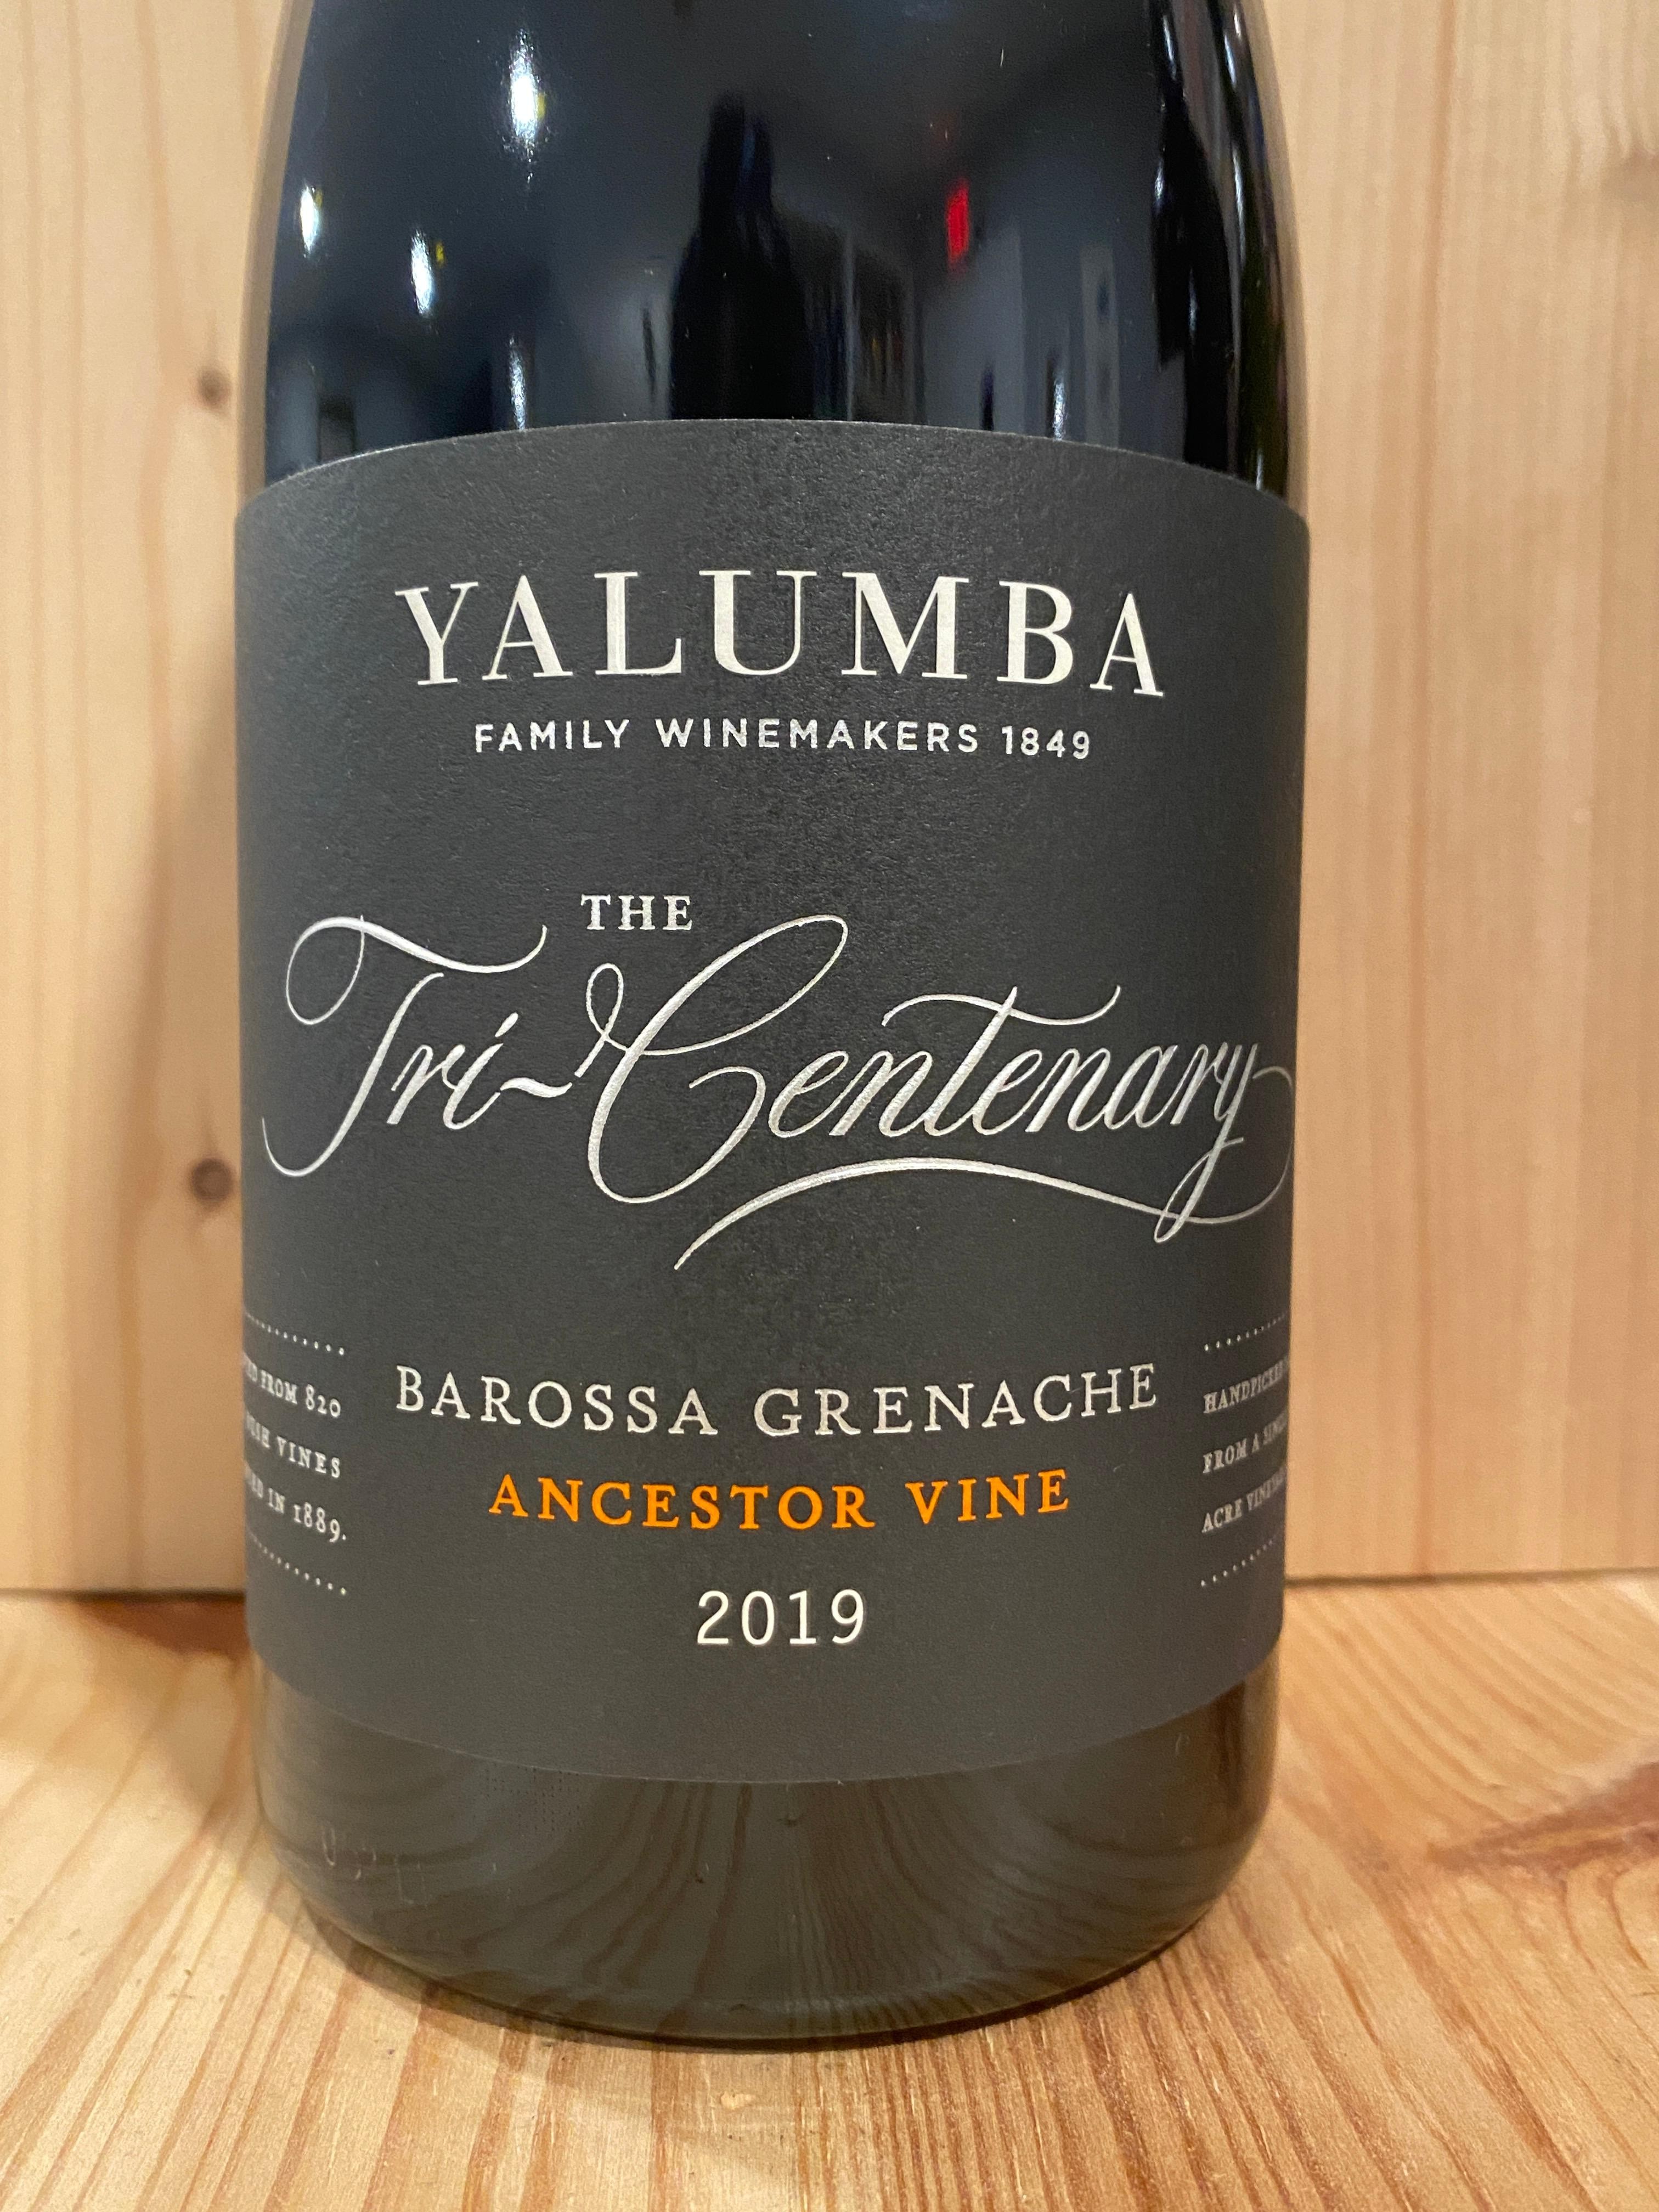 Yalumba "The Tricentenary" Grenache 2019: Barossa, Australia